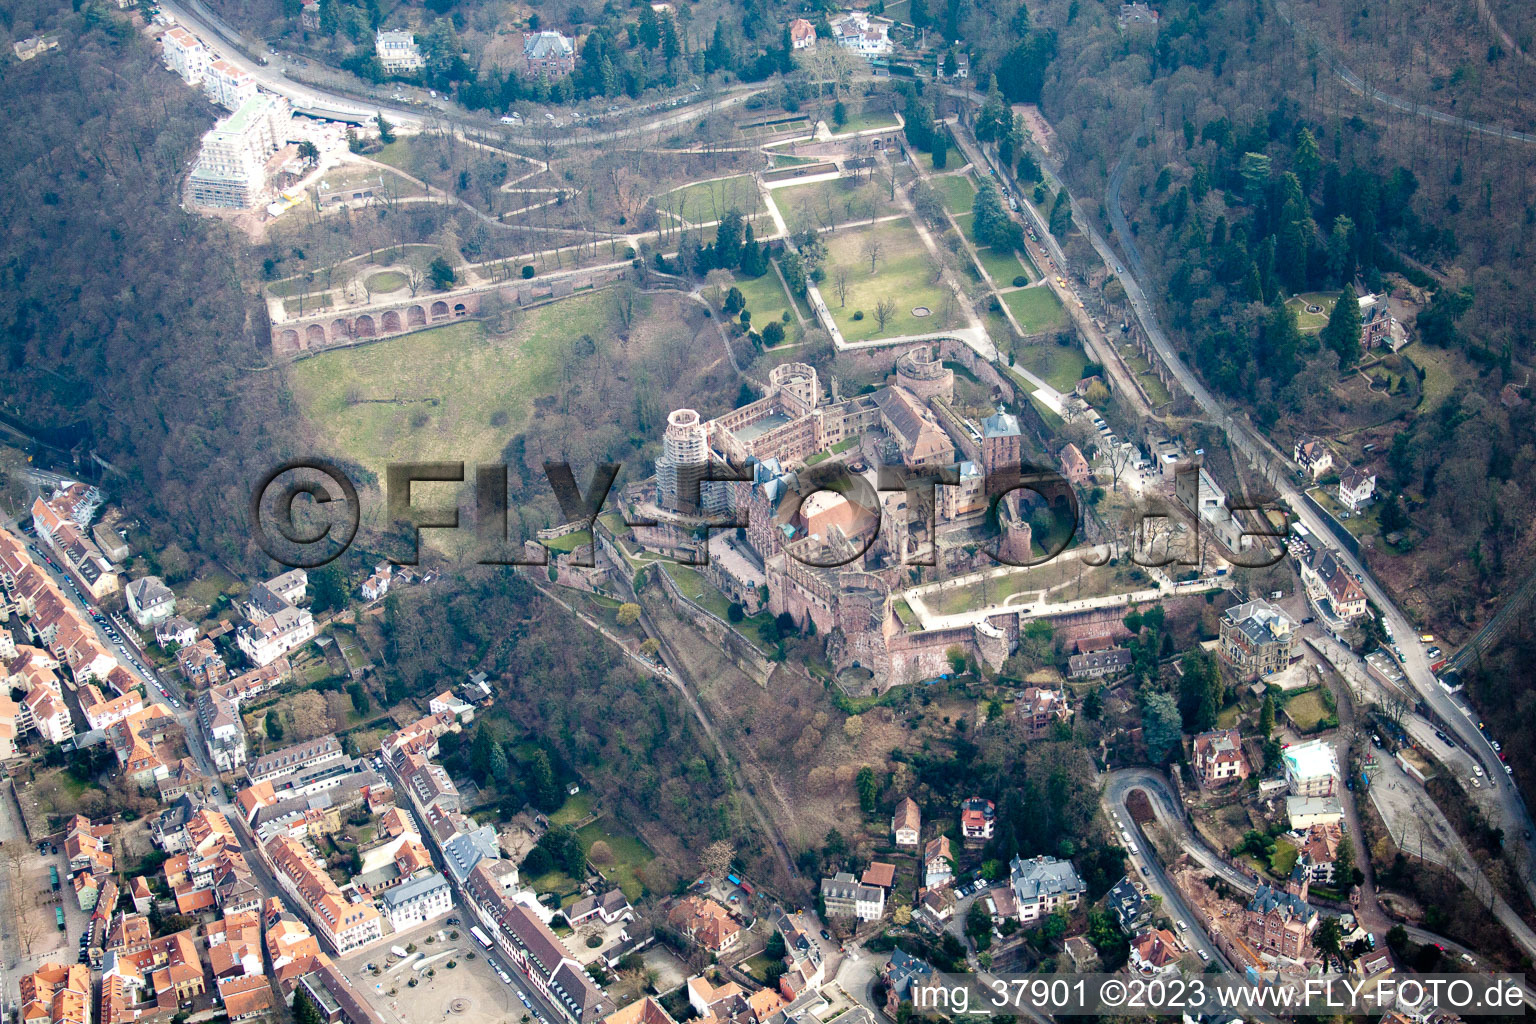 Photographie aérienne de Verrouillage à le quartier Kernaltstadt in Heidelberg dans le département Bade-Wurtemberg, Allemagne